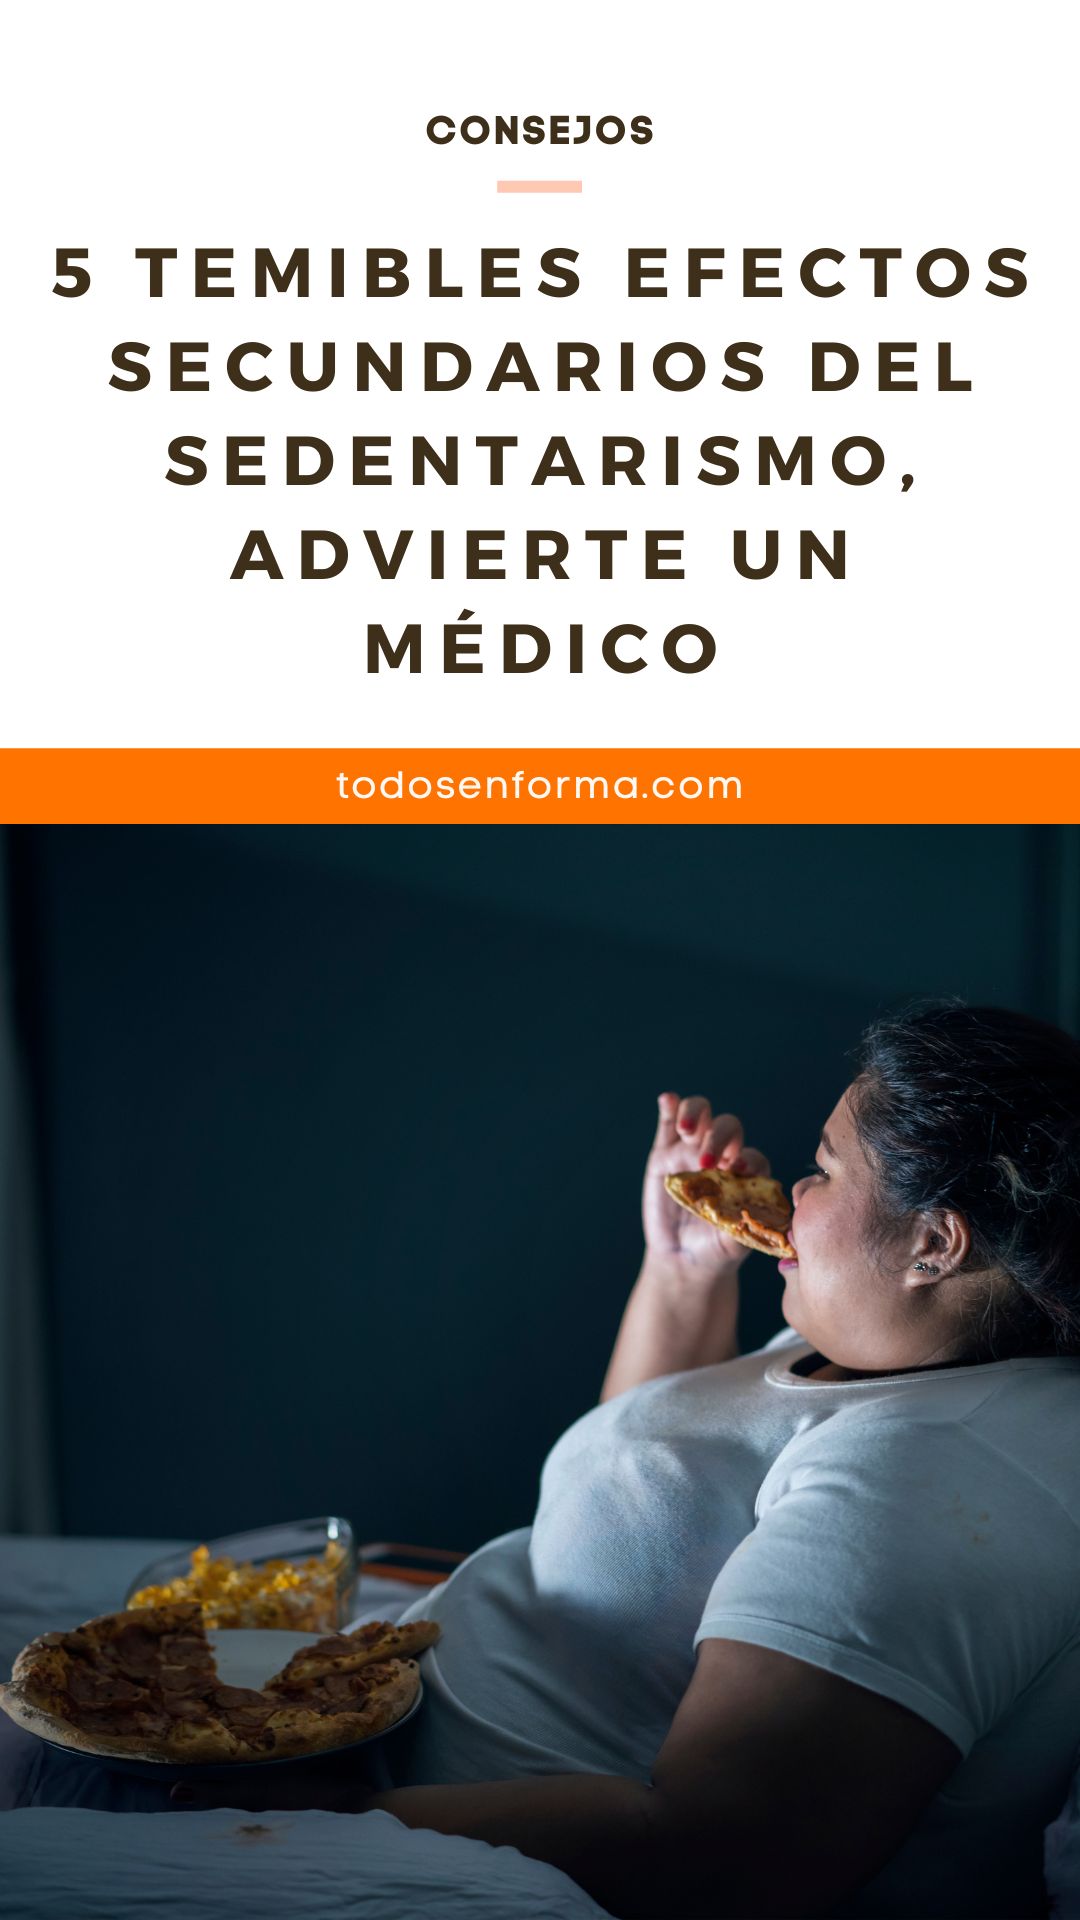 5 temibles efectos secundarios del sedentarismo, advierte un médico